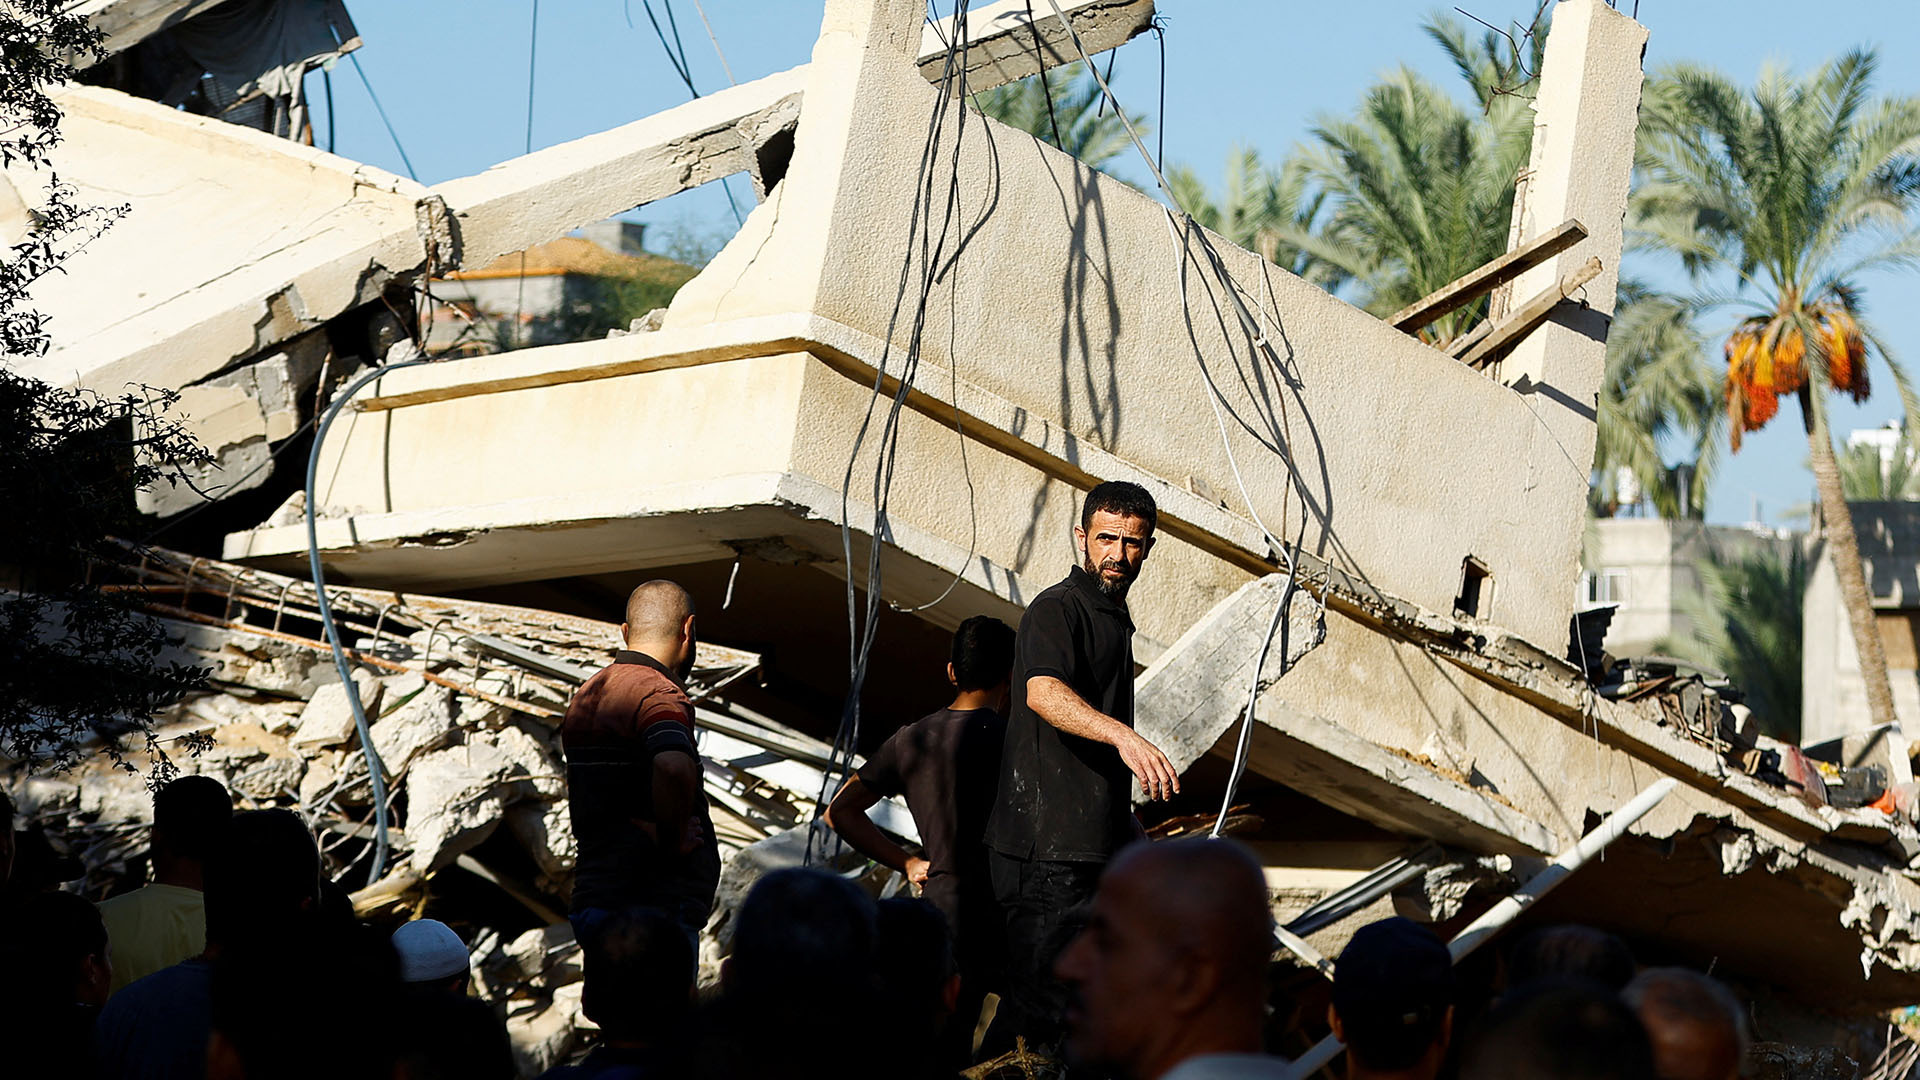 القصف الإسرائيلي يدمر نصف بنايات غزة وآلاف عالقون تحت الأنقاض | أخبار – البوكس نيوز